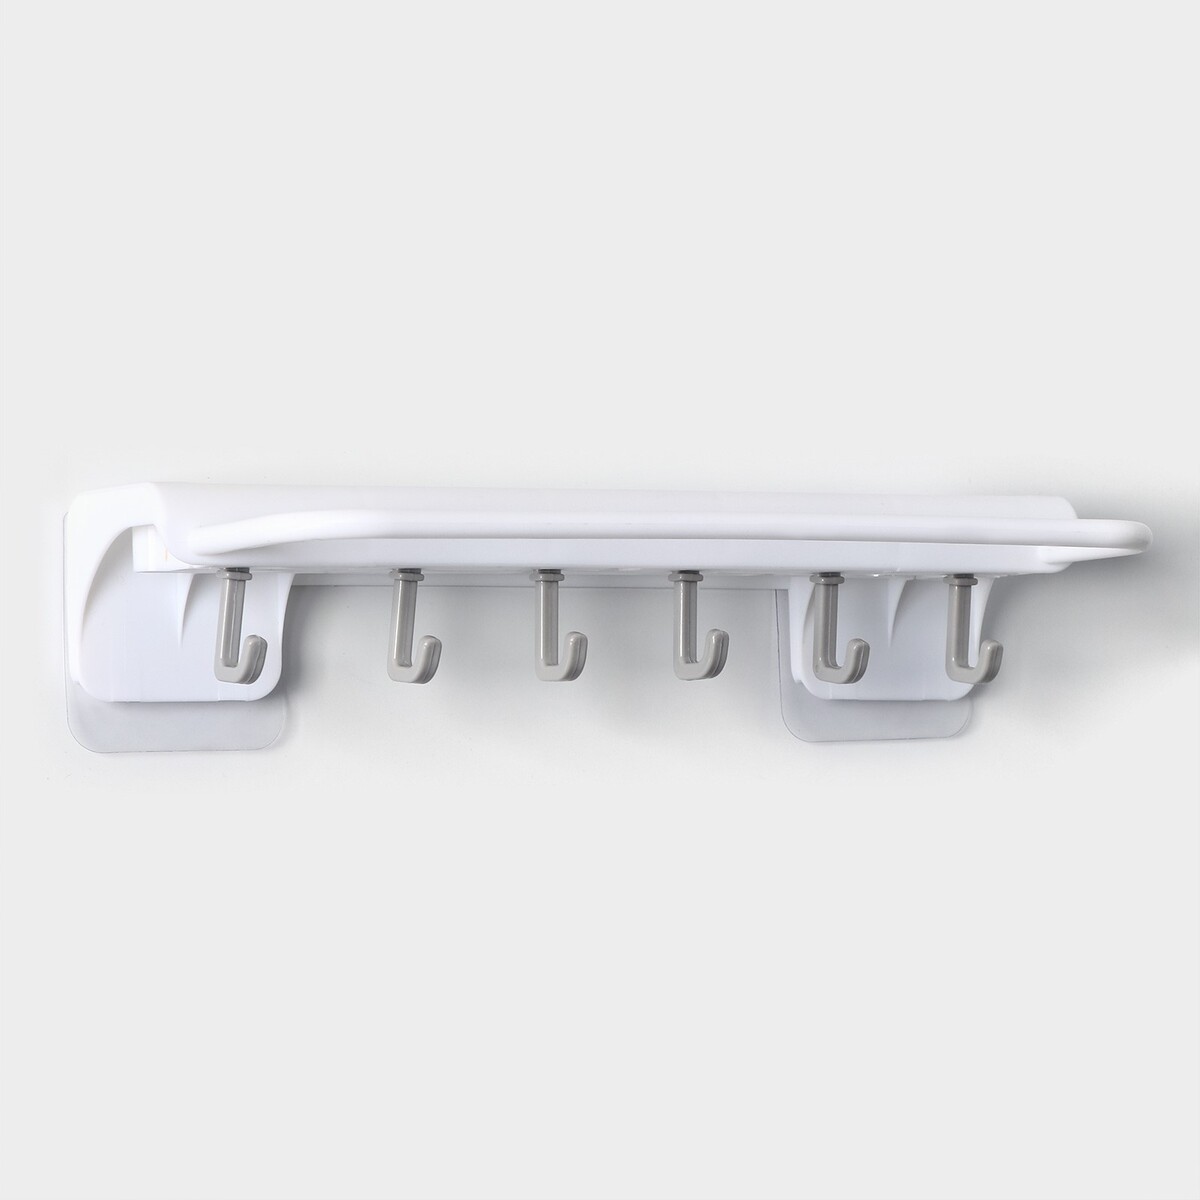 Держатель для ножей и кухонных принадлежностей, 25,5×11×5 см, цвет белый держатель для ножей и кухонных принадлежностей 25 5×11×5 см белый